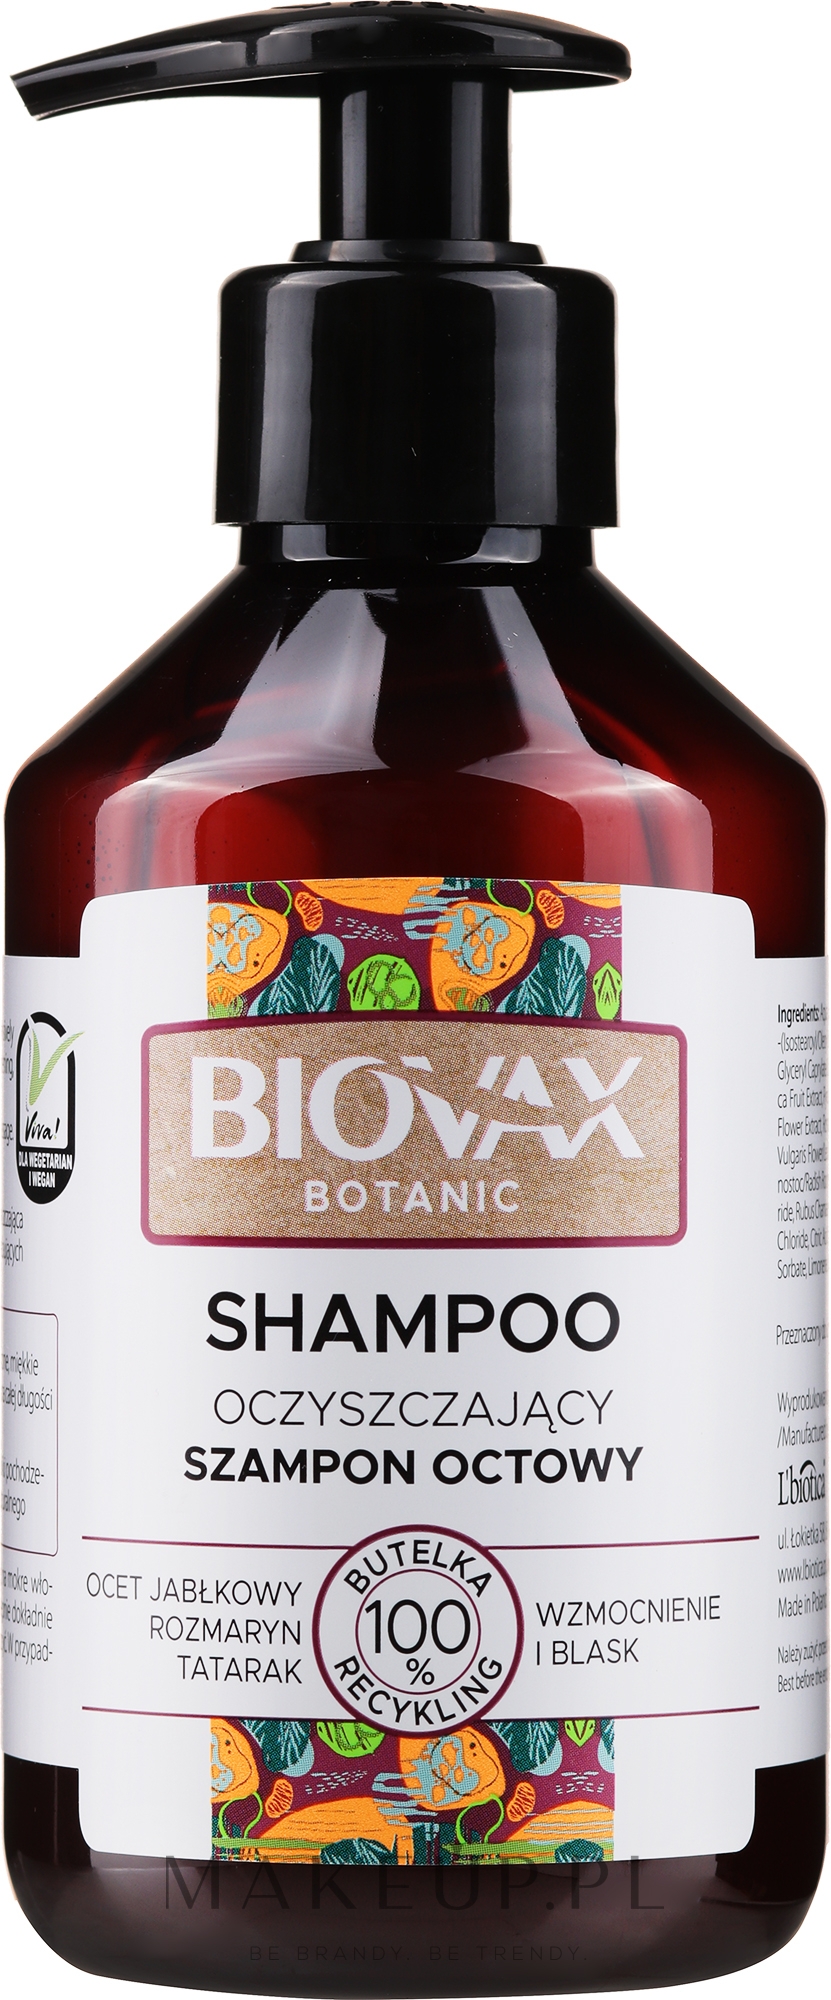 biovax szampon wzmocnienie